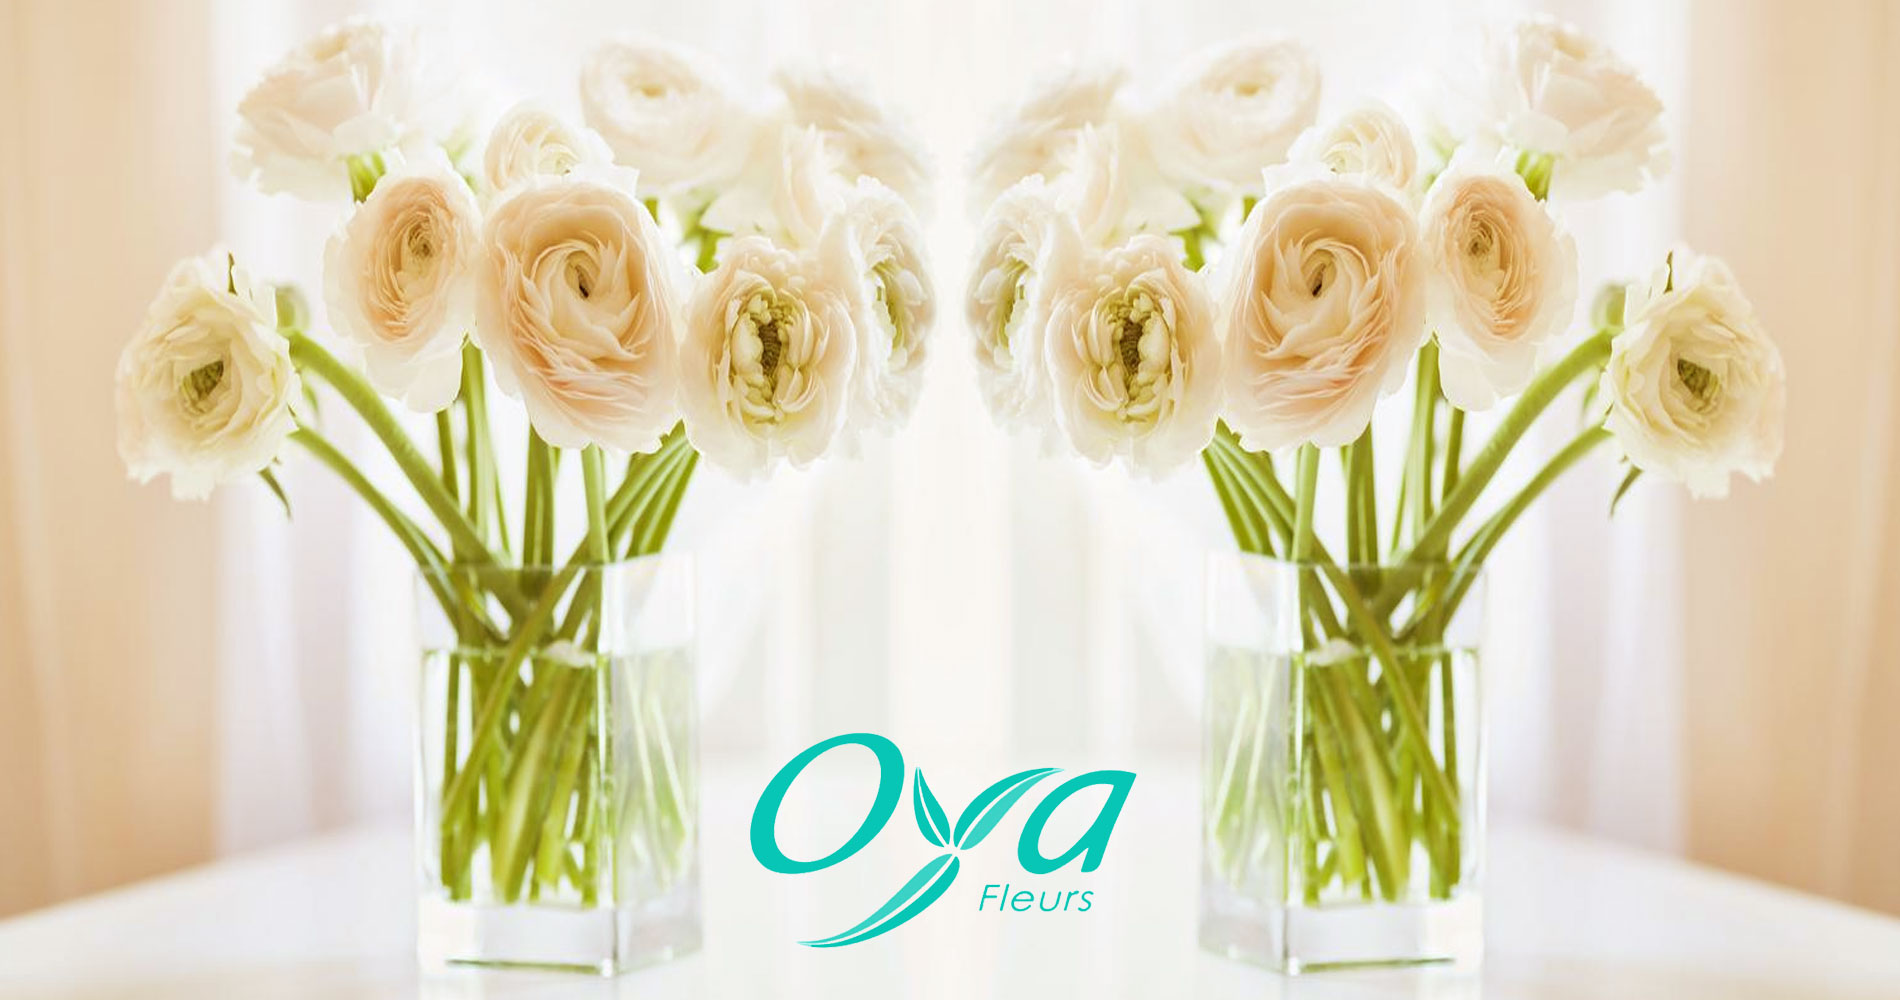 voir les magasins de fleurs en bouquets Oya fleurs